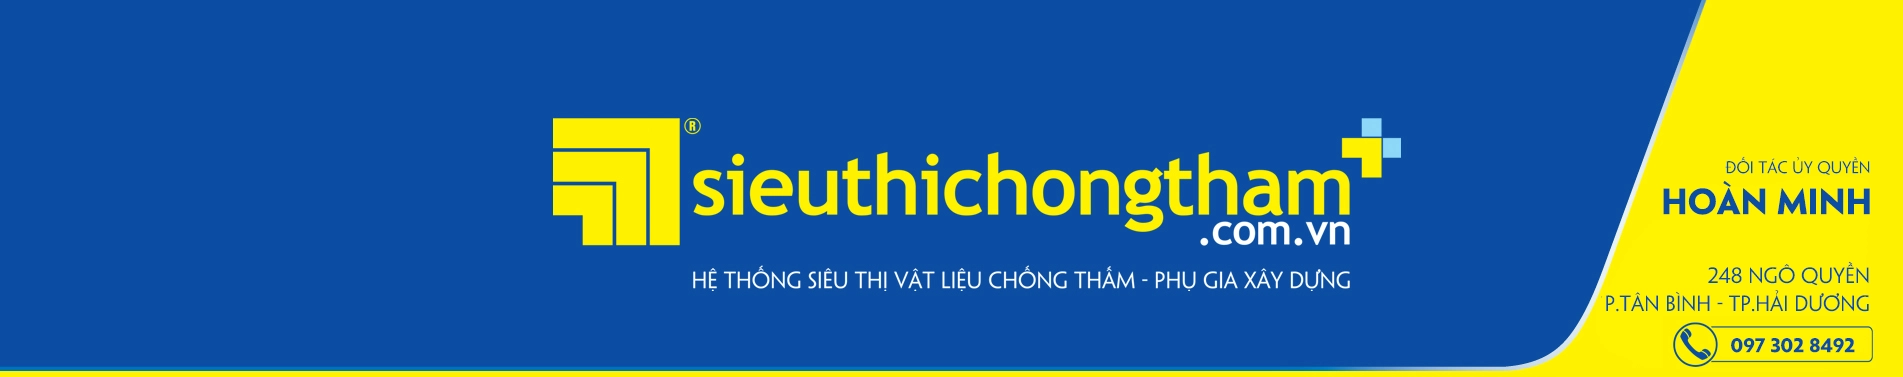 HOAN MINH Banner